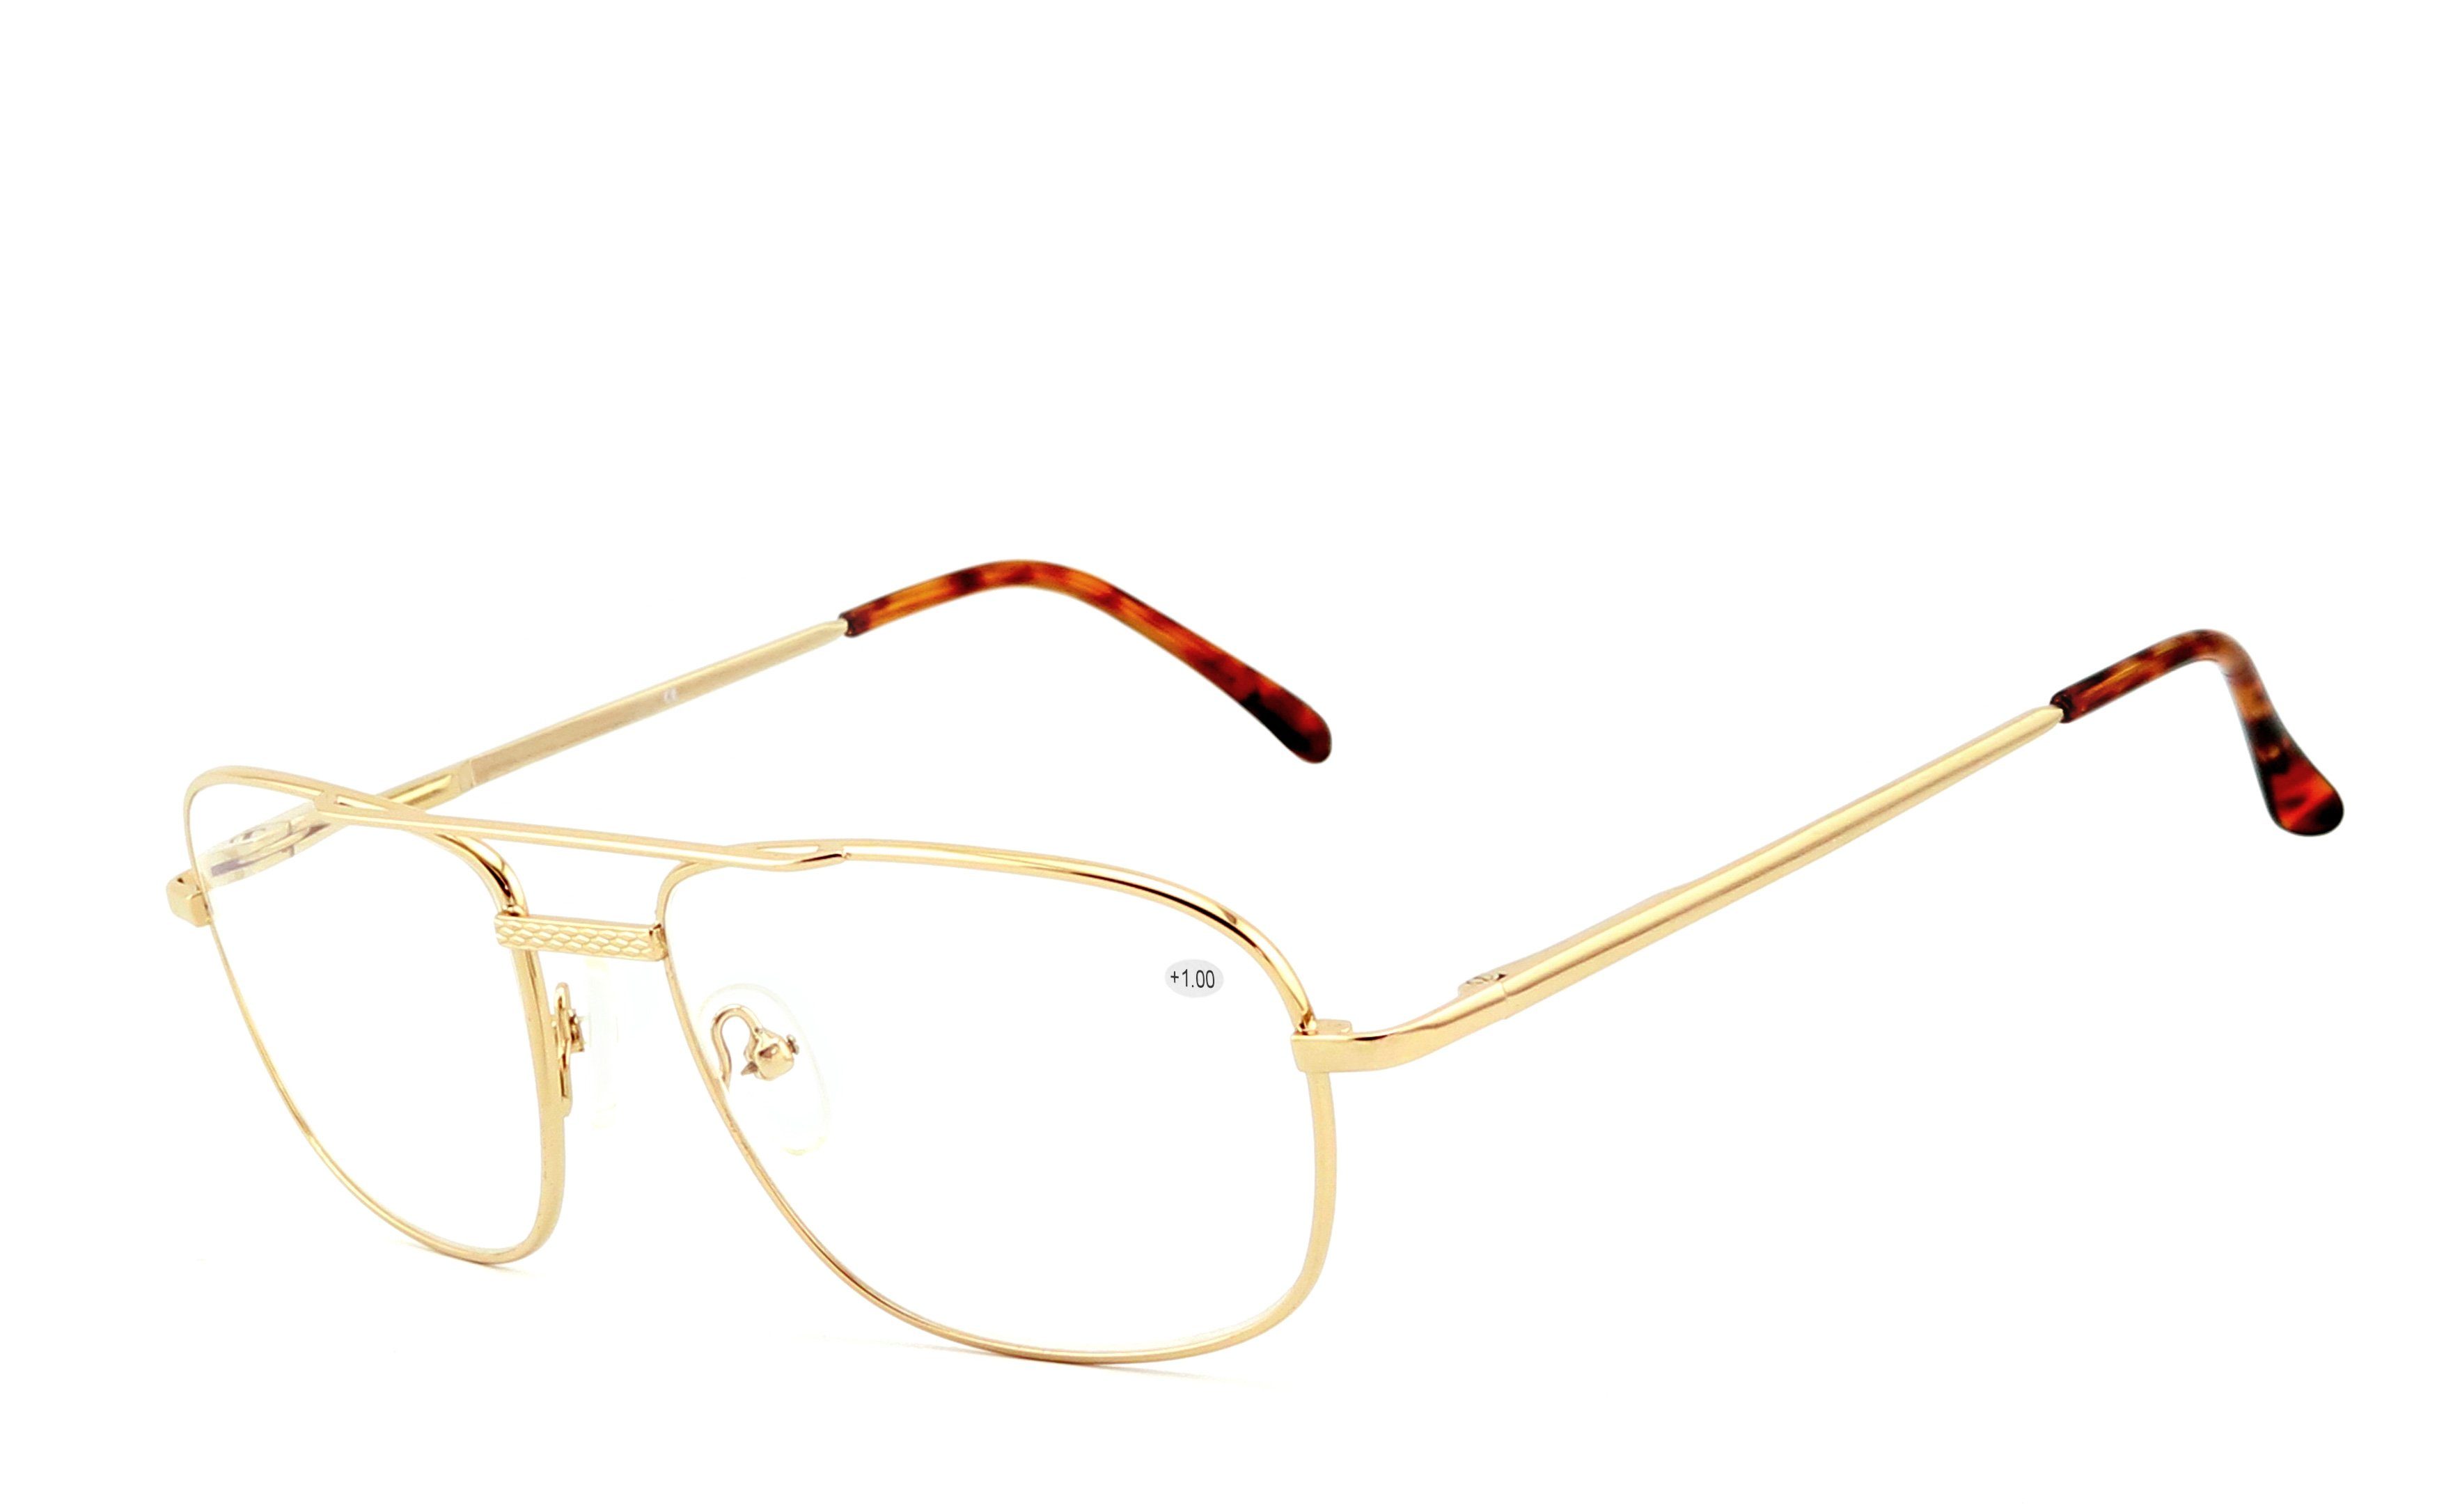 EYESTUFF Lesebrille Lesebrille 008 gold, Brillenbügel mit hochwertigen Flex-Scharnieren